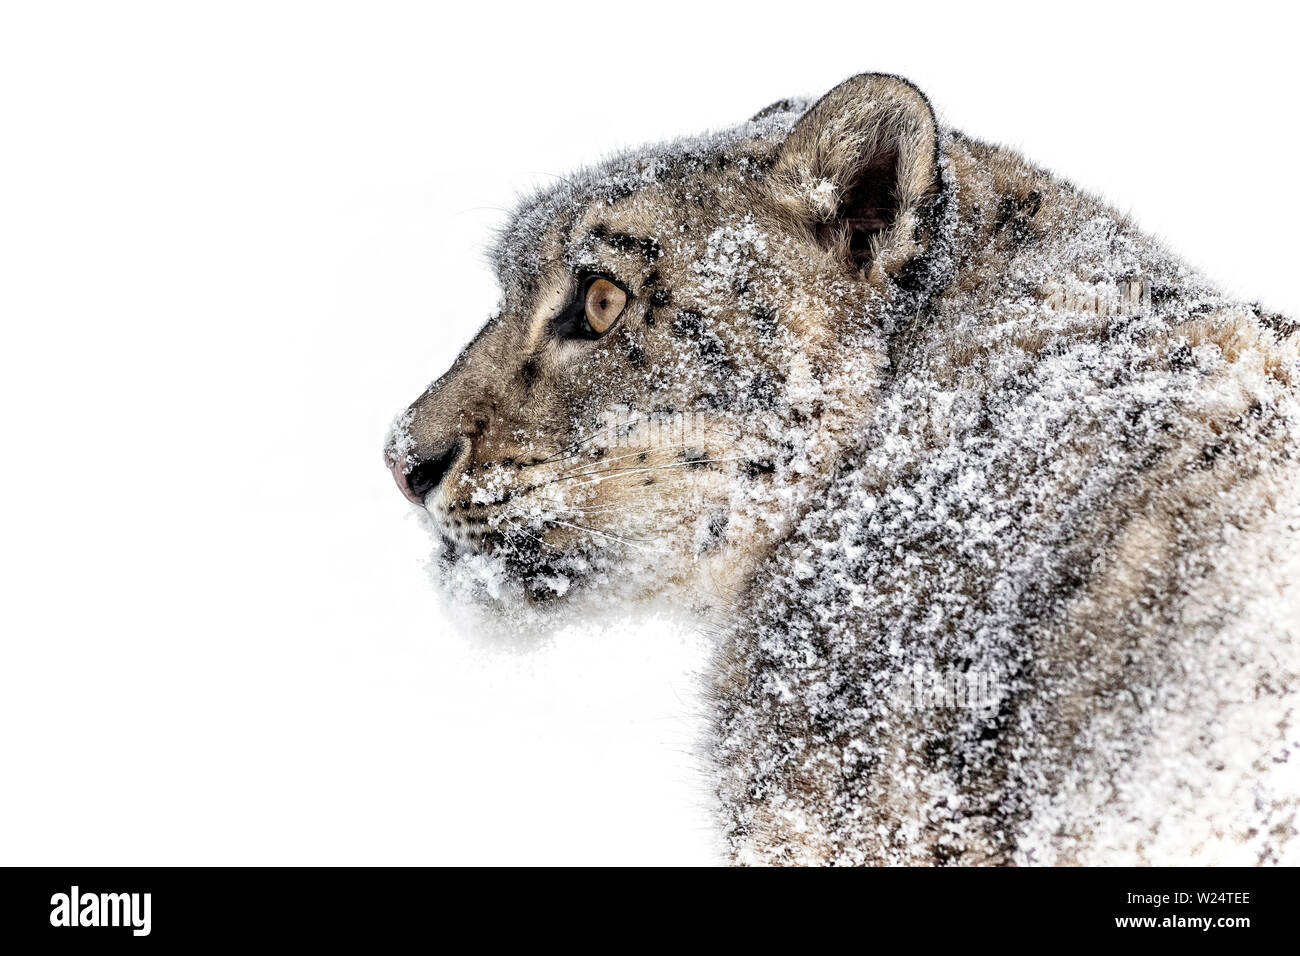 Die Snow Leopard ist eine große Katze von der Bergkette von Zentral- und Südasien in den alpinen Zonen in einer Höhe von 10.000 bis 15.000 Fuß. Stockfoto